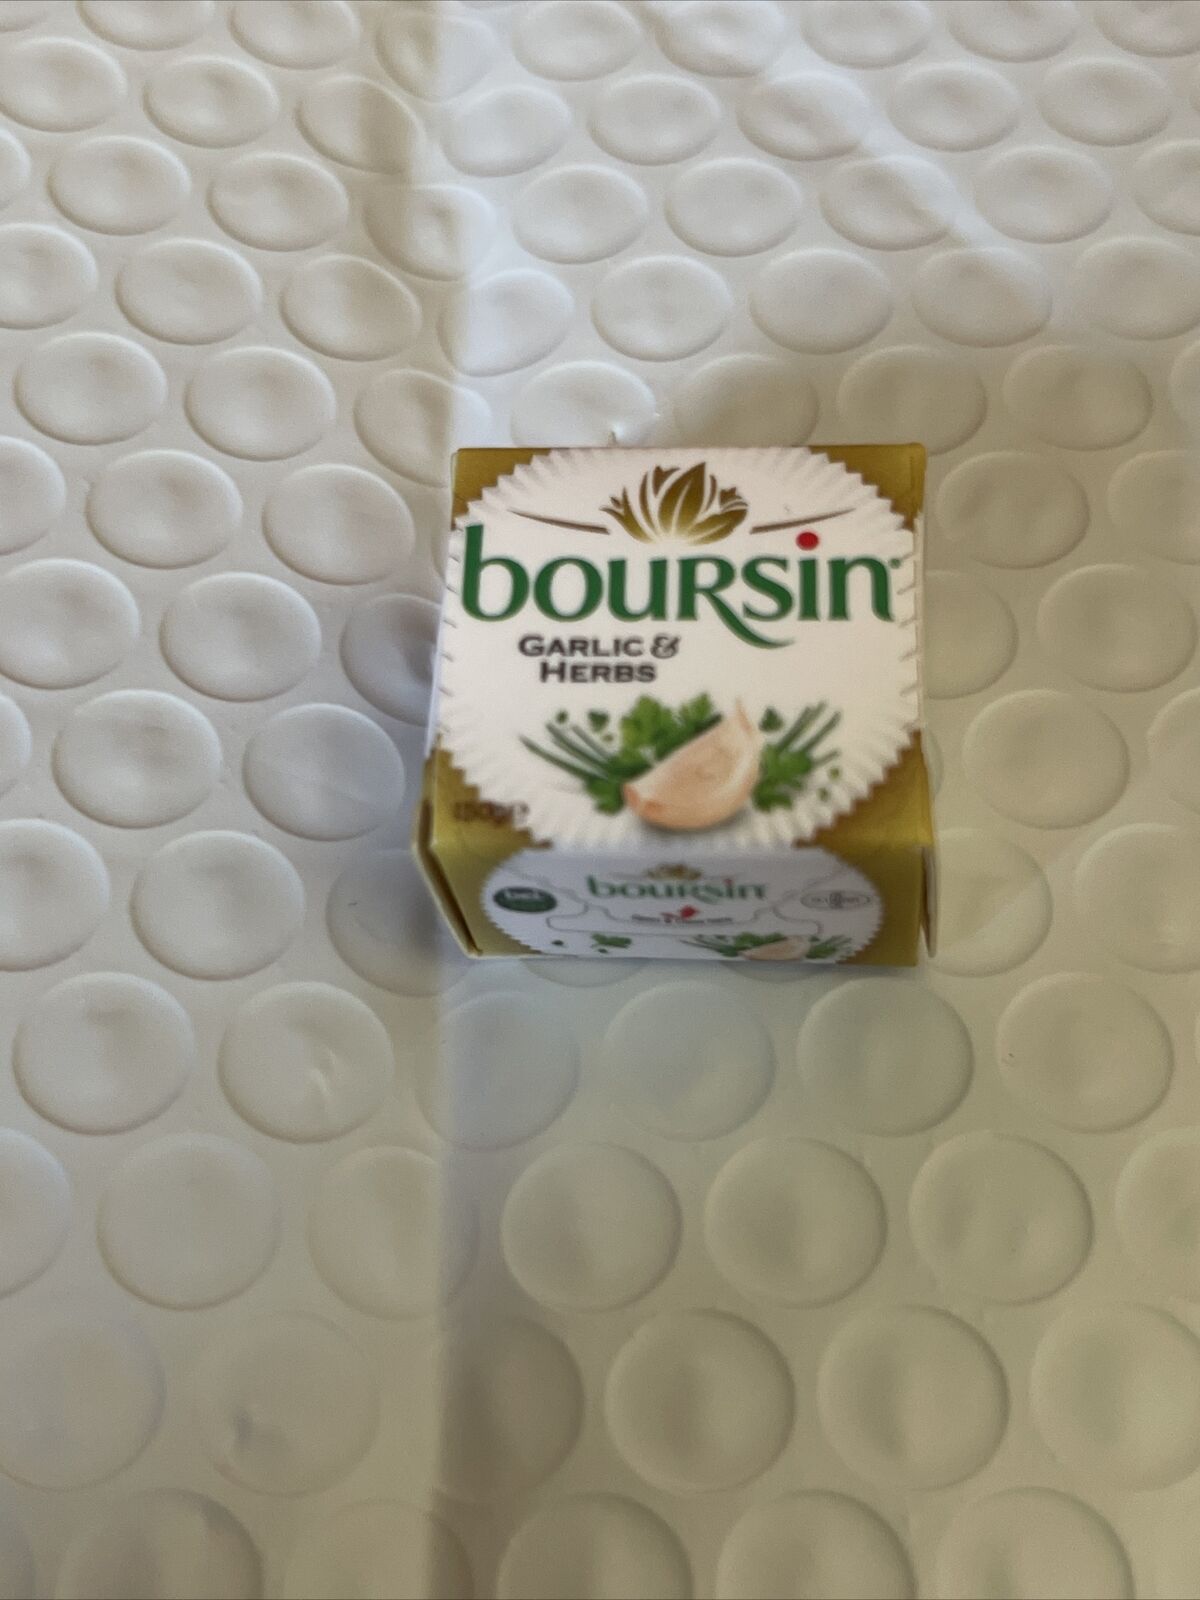 Zuru 5 Surprise Mini Brands Series 2 Boursin Garlic & Herbs E0828d